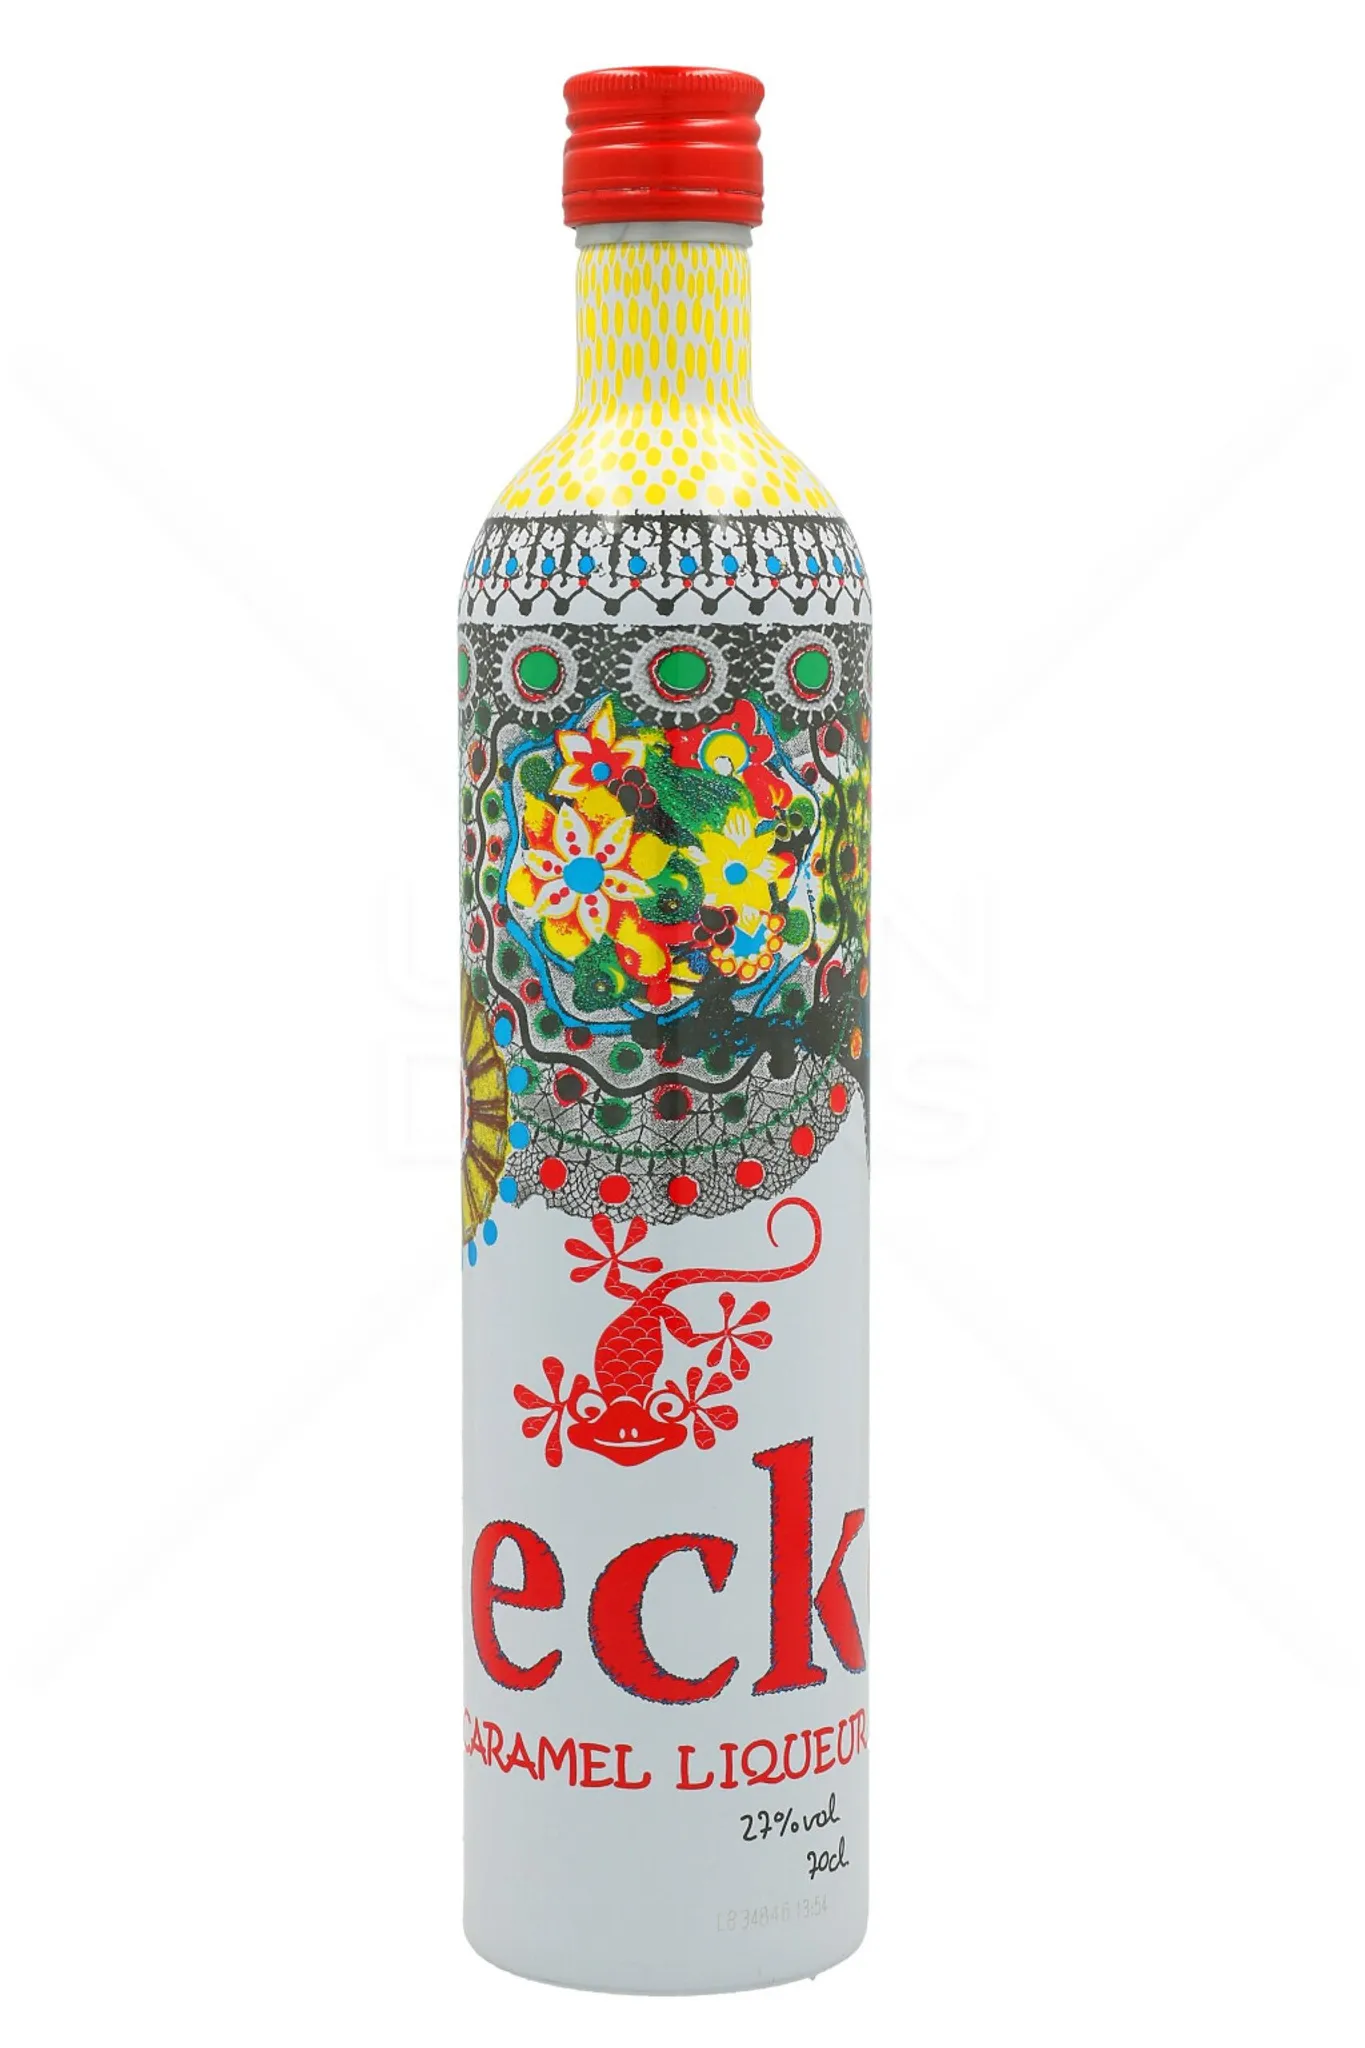 (27% Vol.) Vodka 0,7L Caramel Gecko